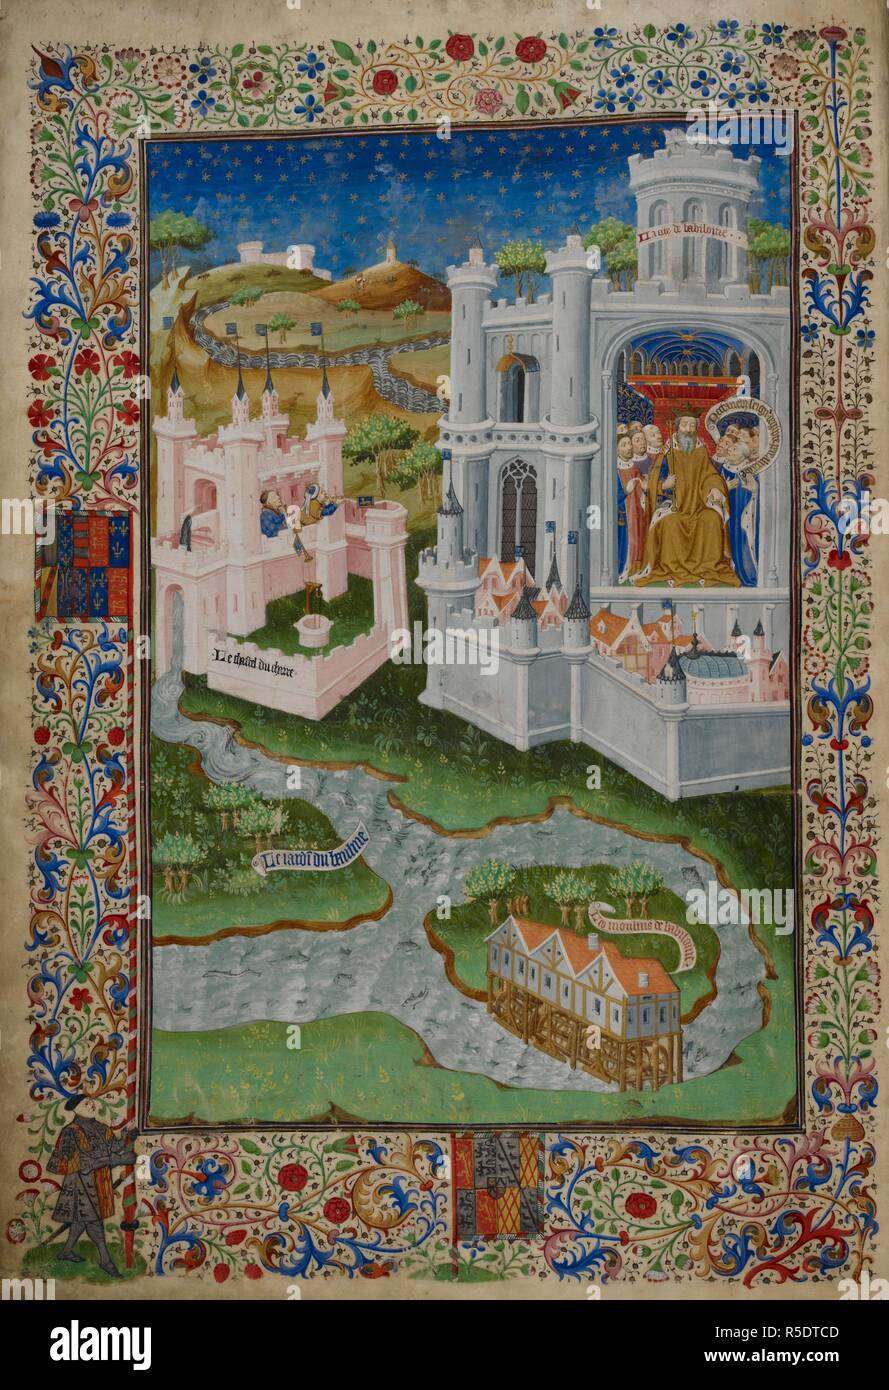 Nectanebus in Babilonia. . Il libro di Shrewsbury. Poesie e romanzi, &c., in francese. Rouen, 1444 - 45. Fonte: Royal 15 E. VI, f.4v. Lingua: Francese. Foto Stock